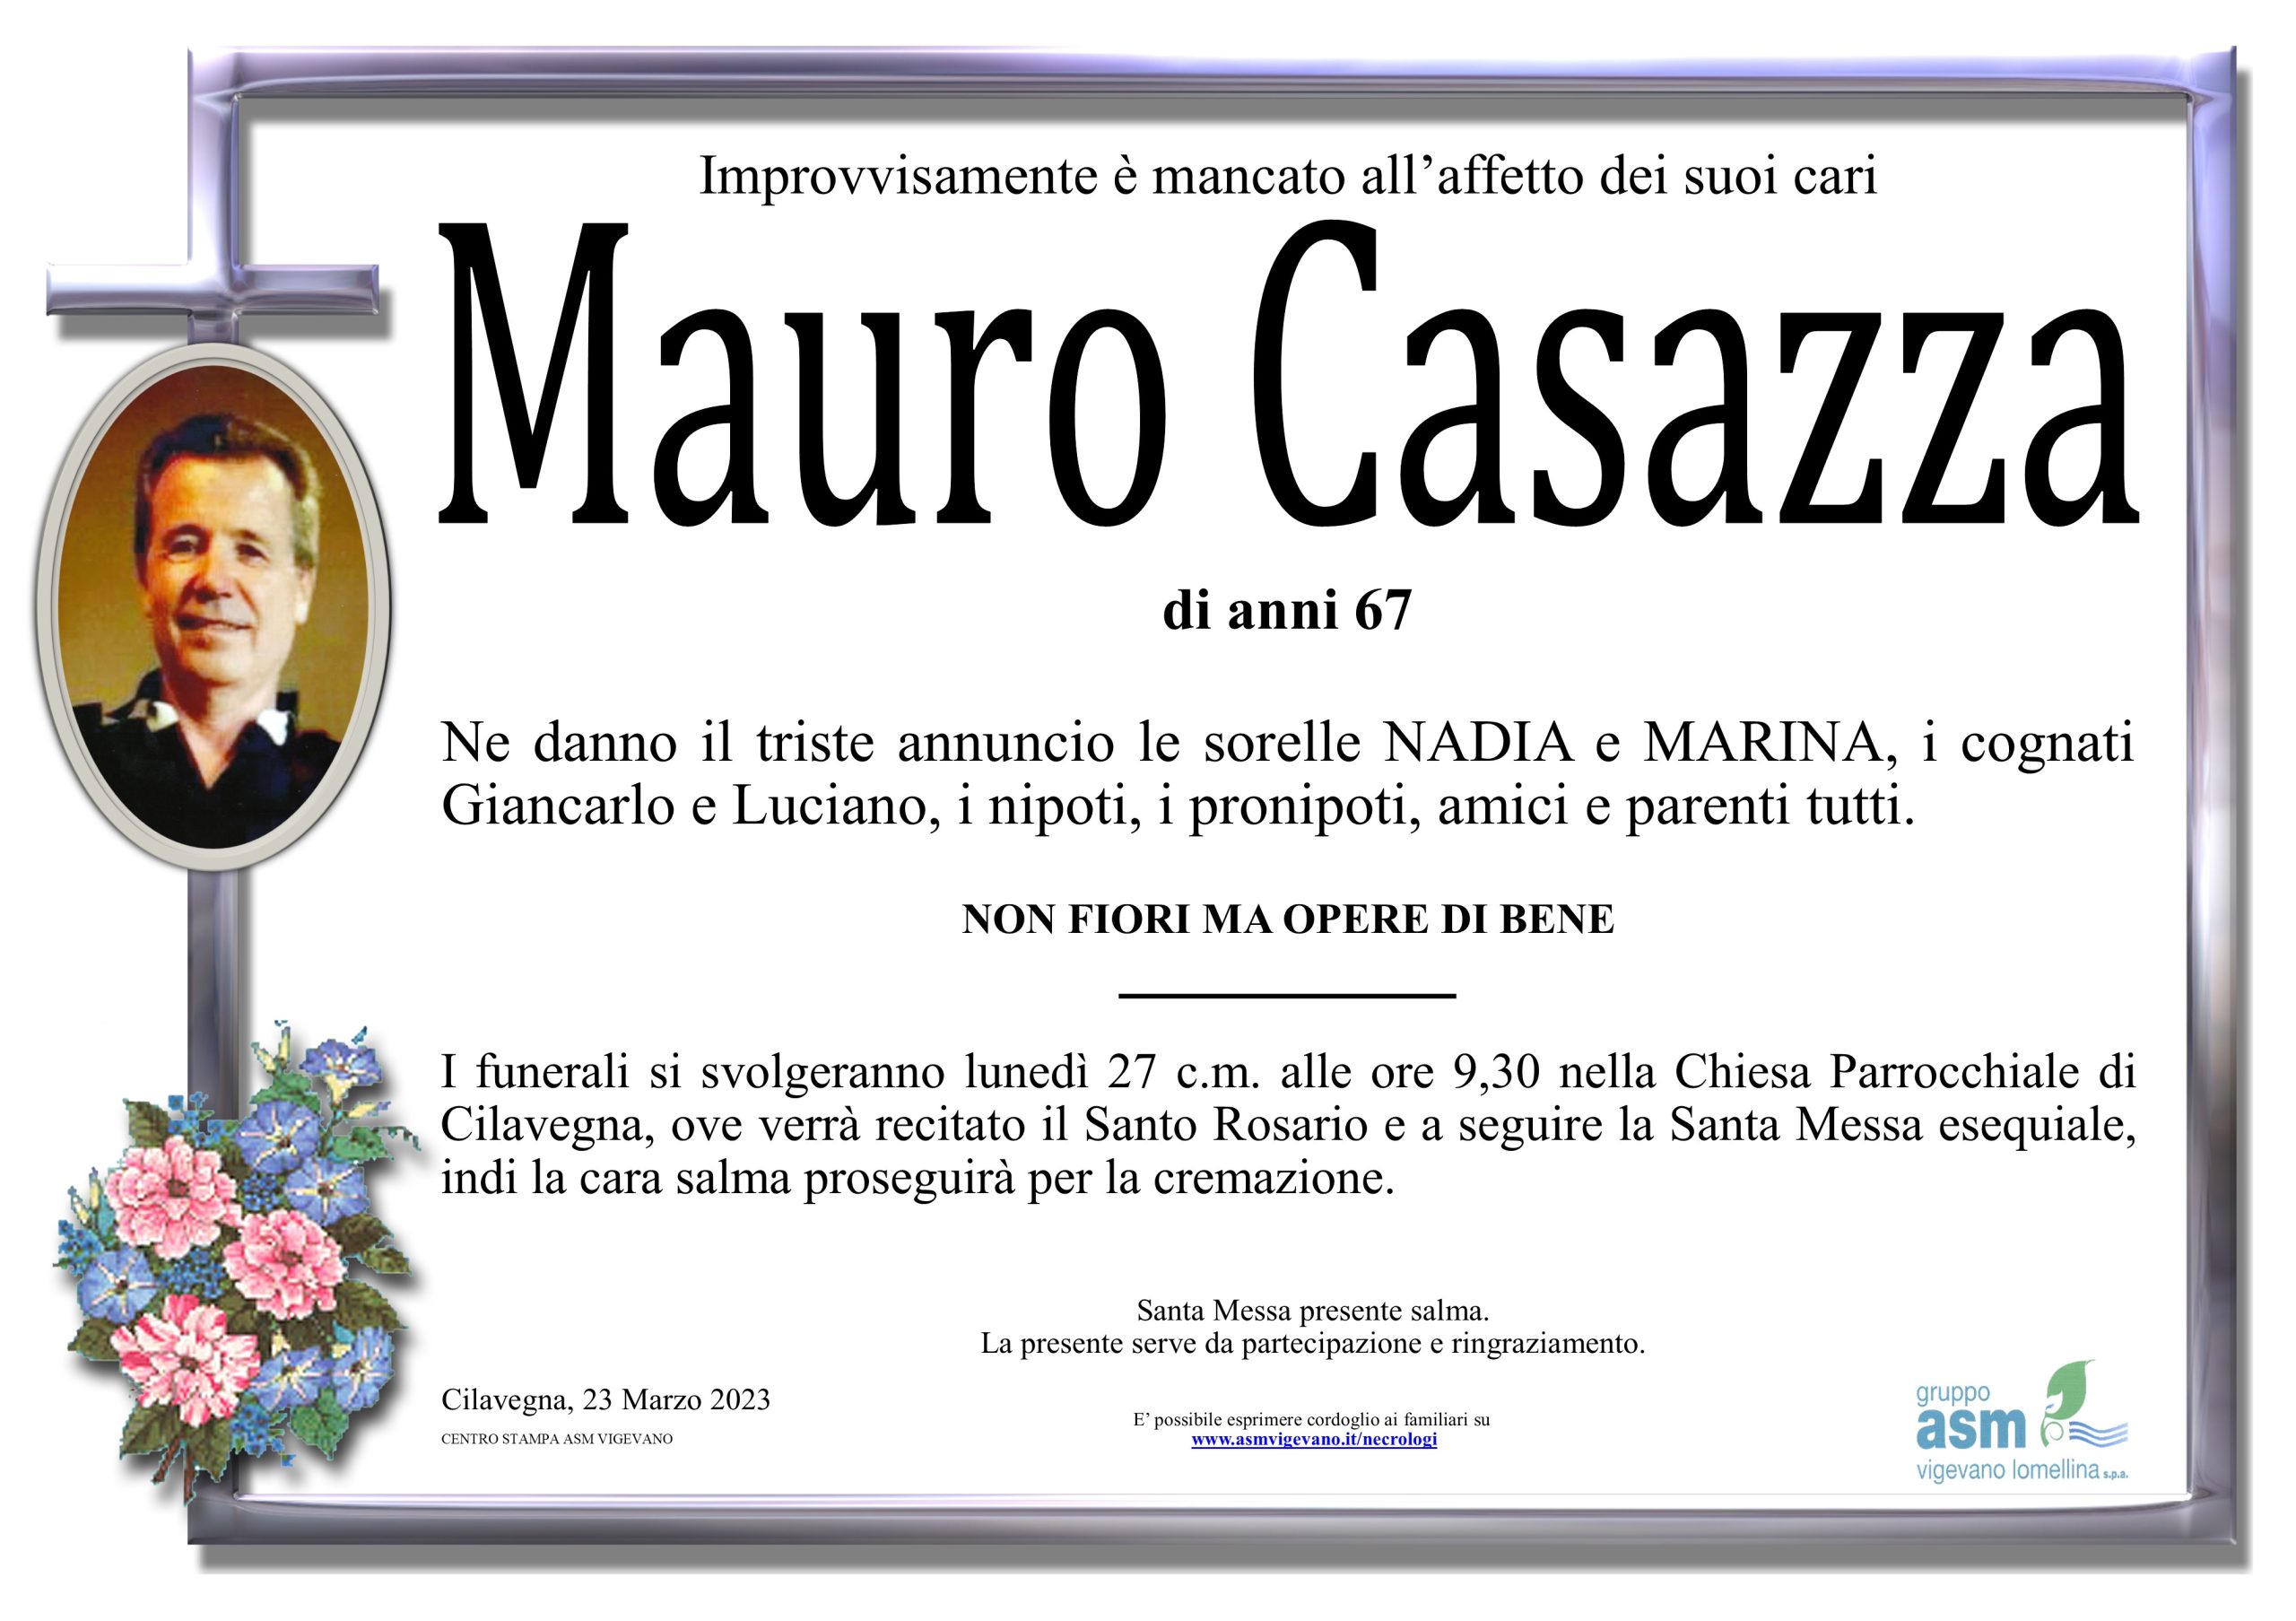 Mauro Casazza